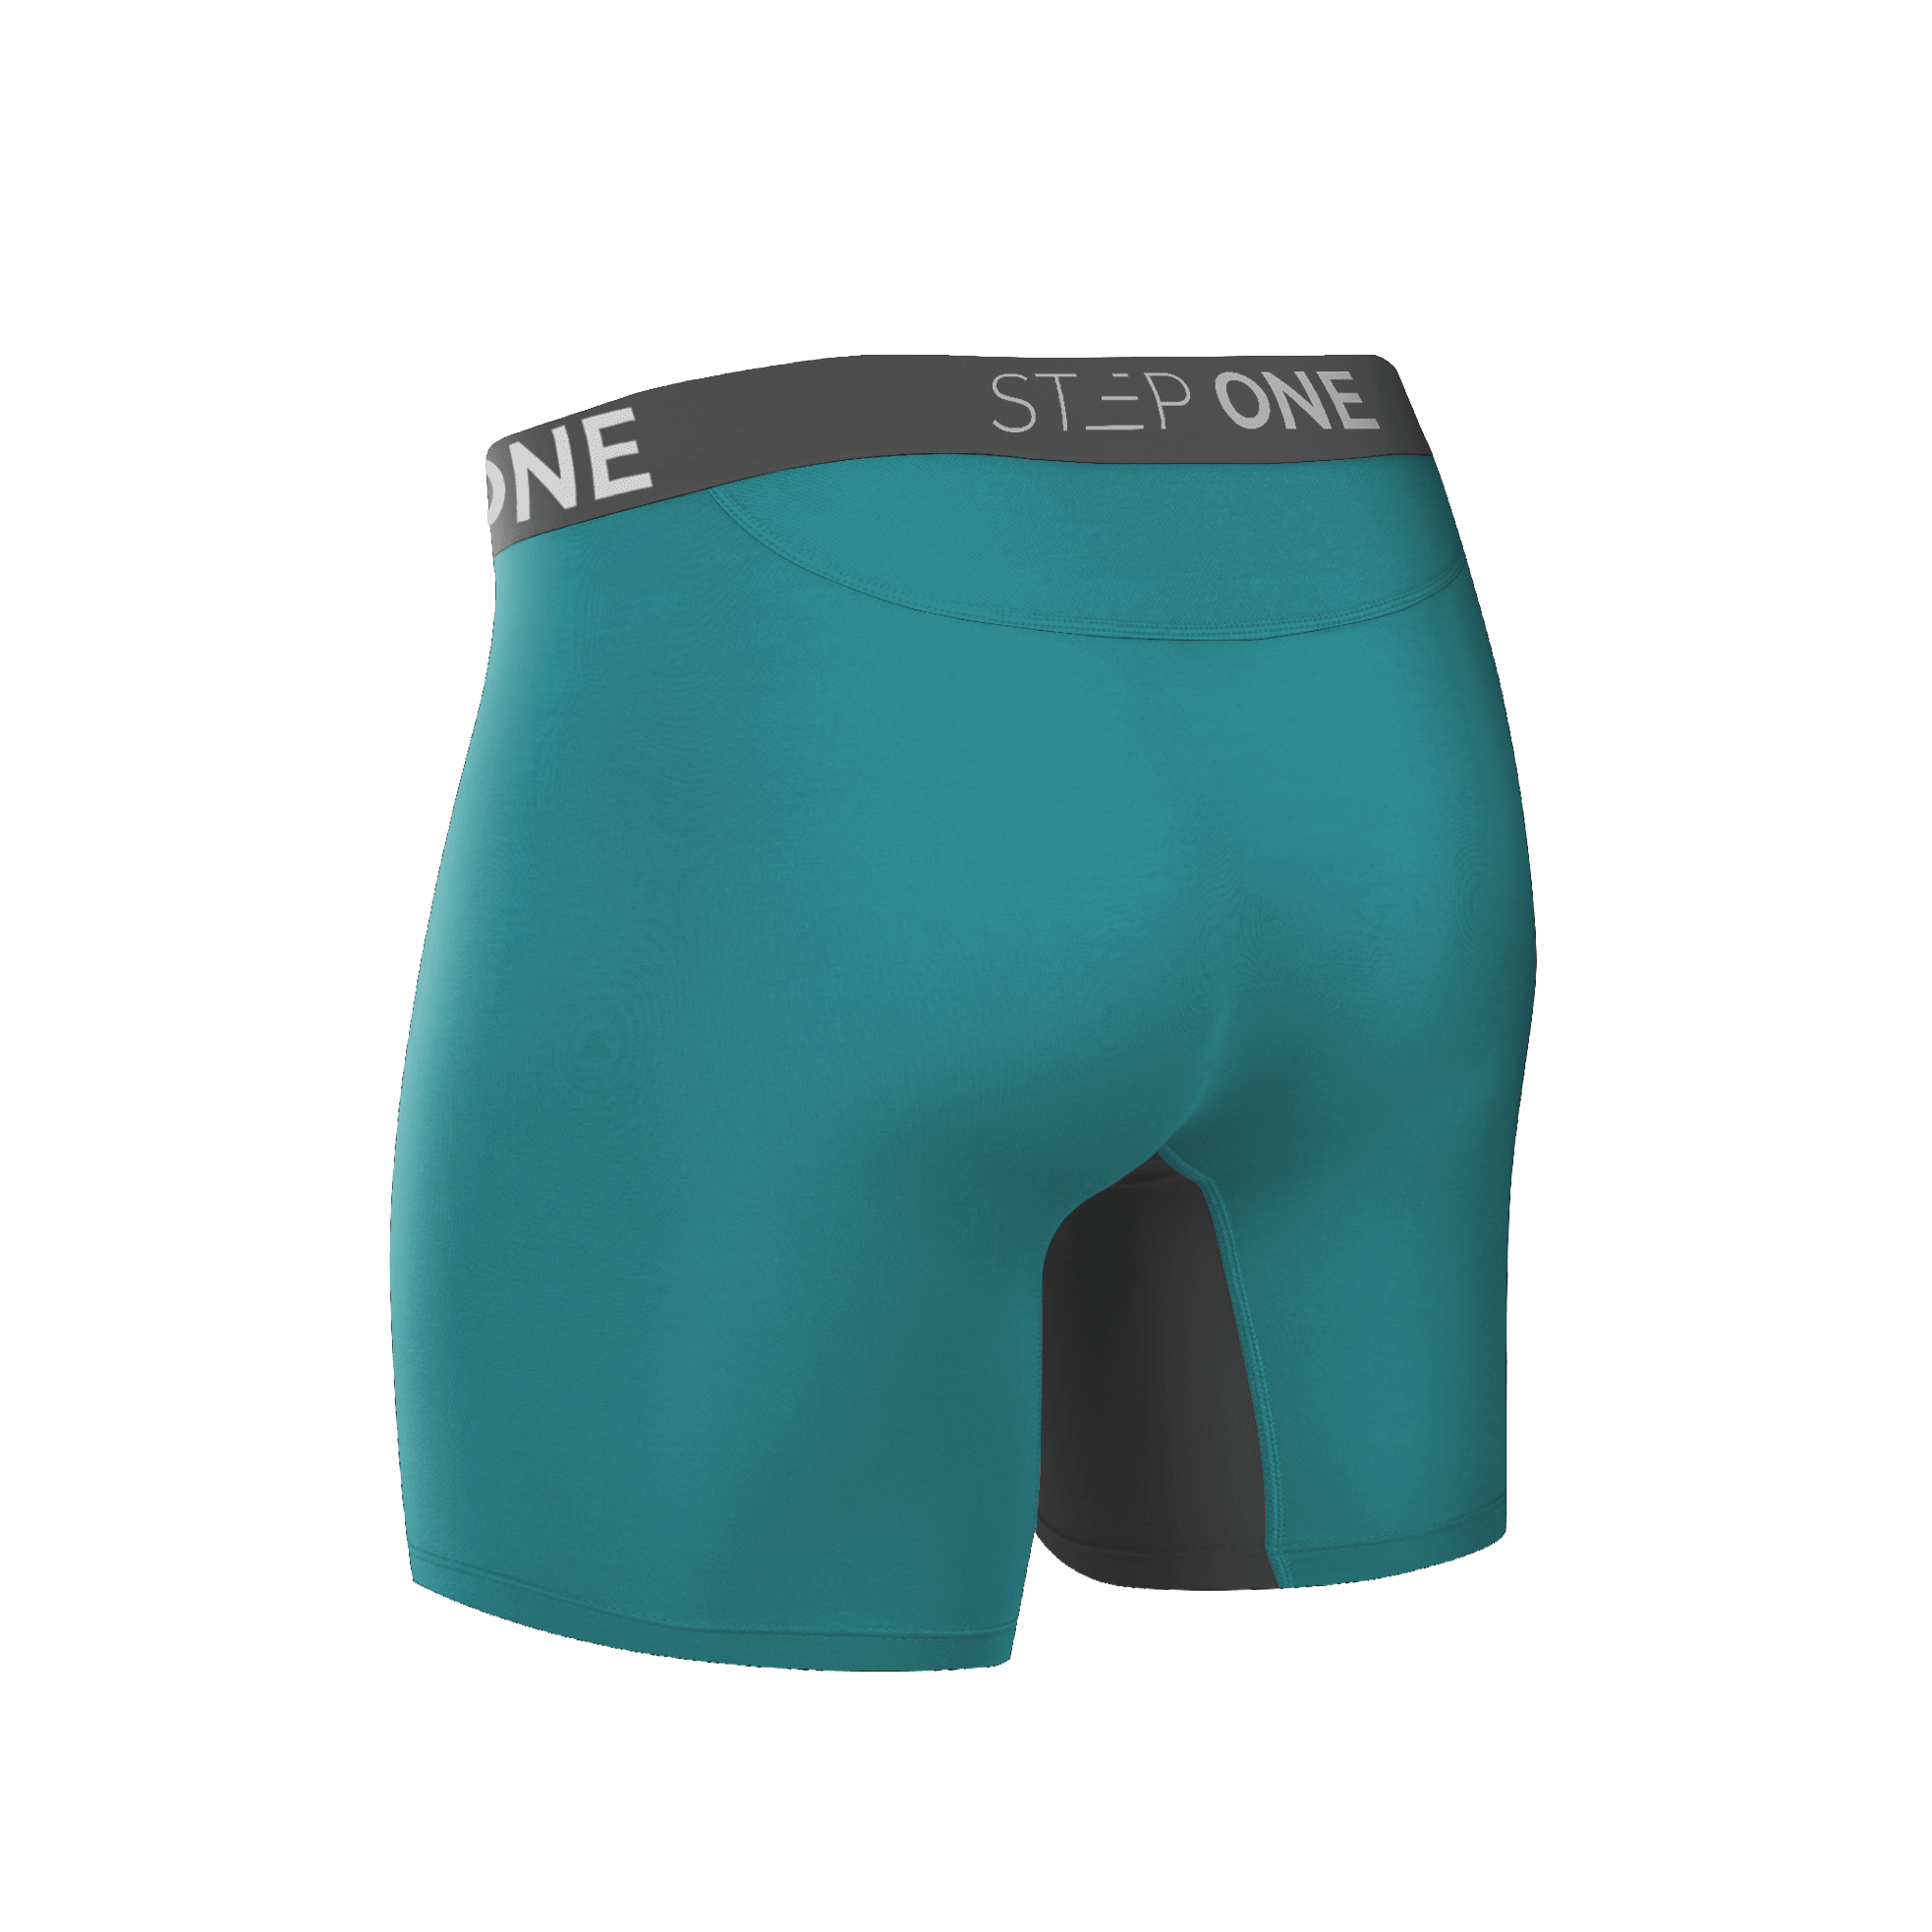 Boxer Brief Fly Original  Step One Men's Underwear UK